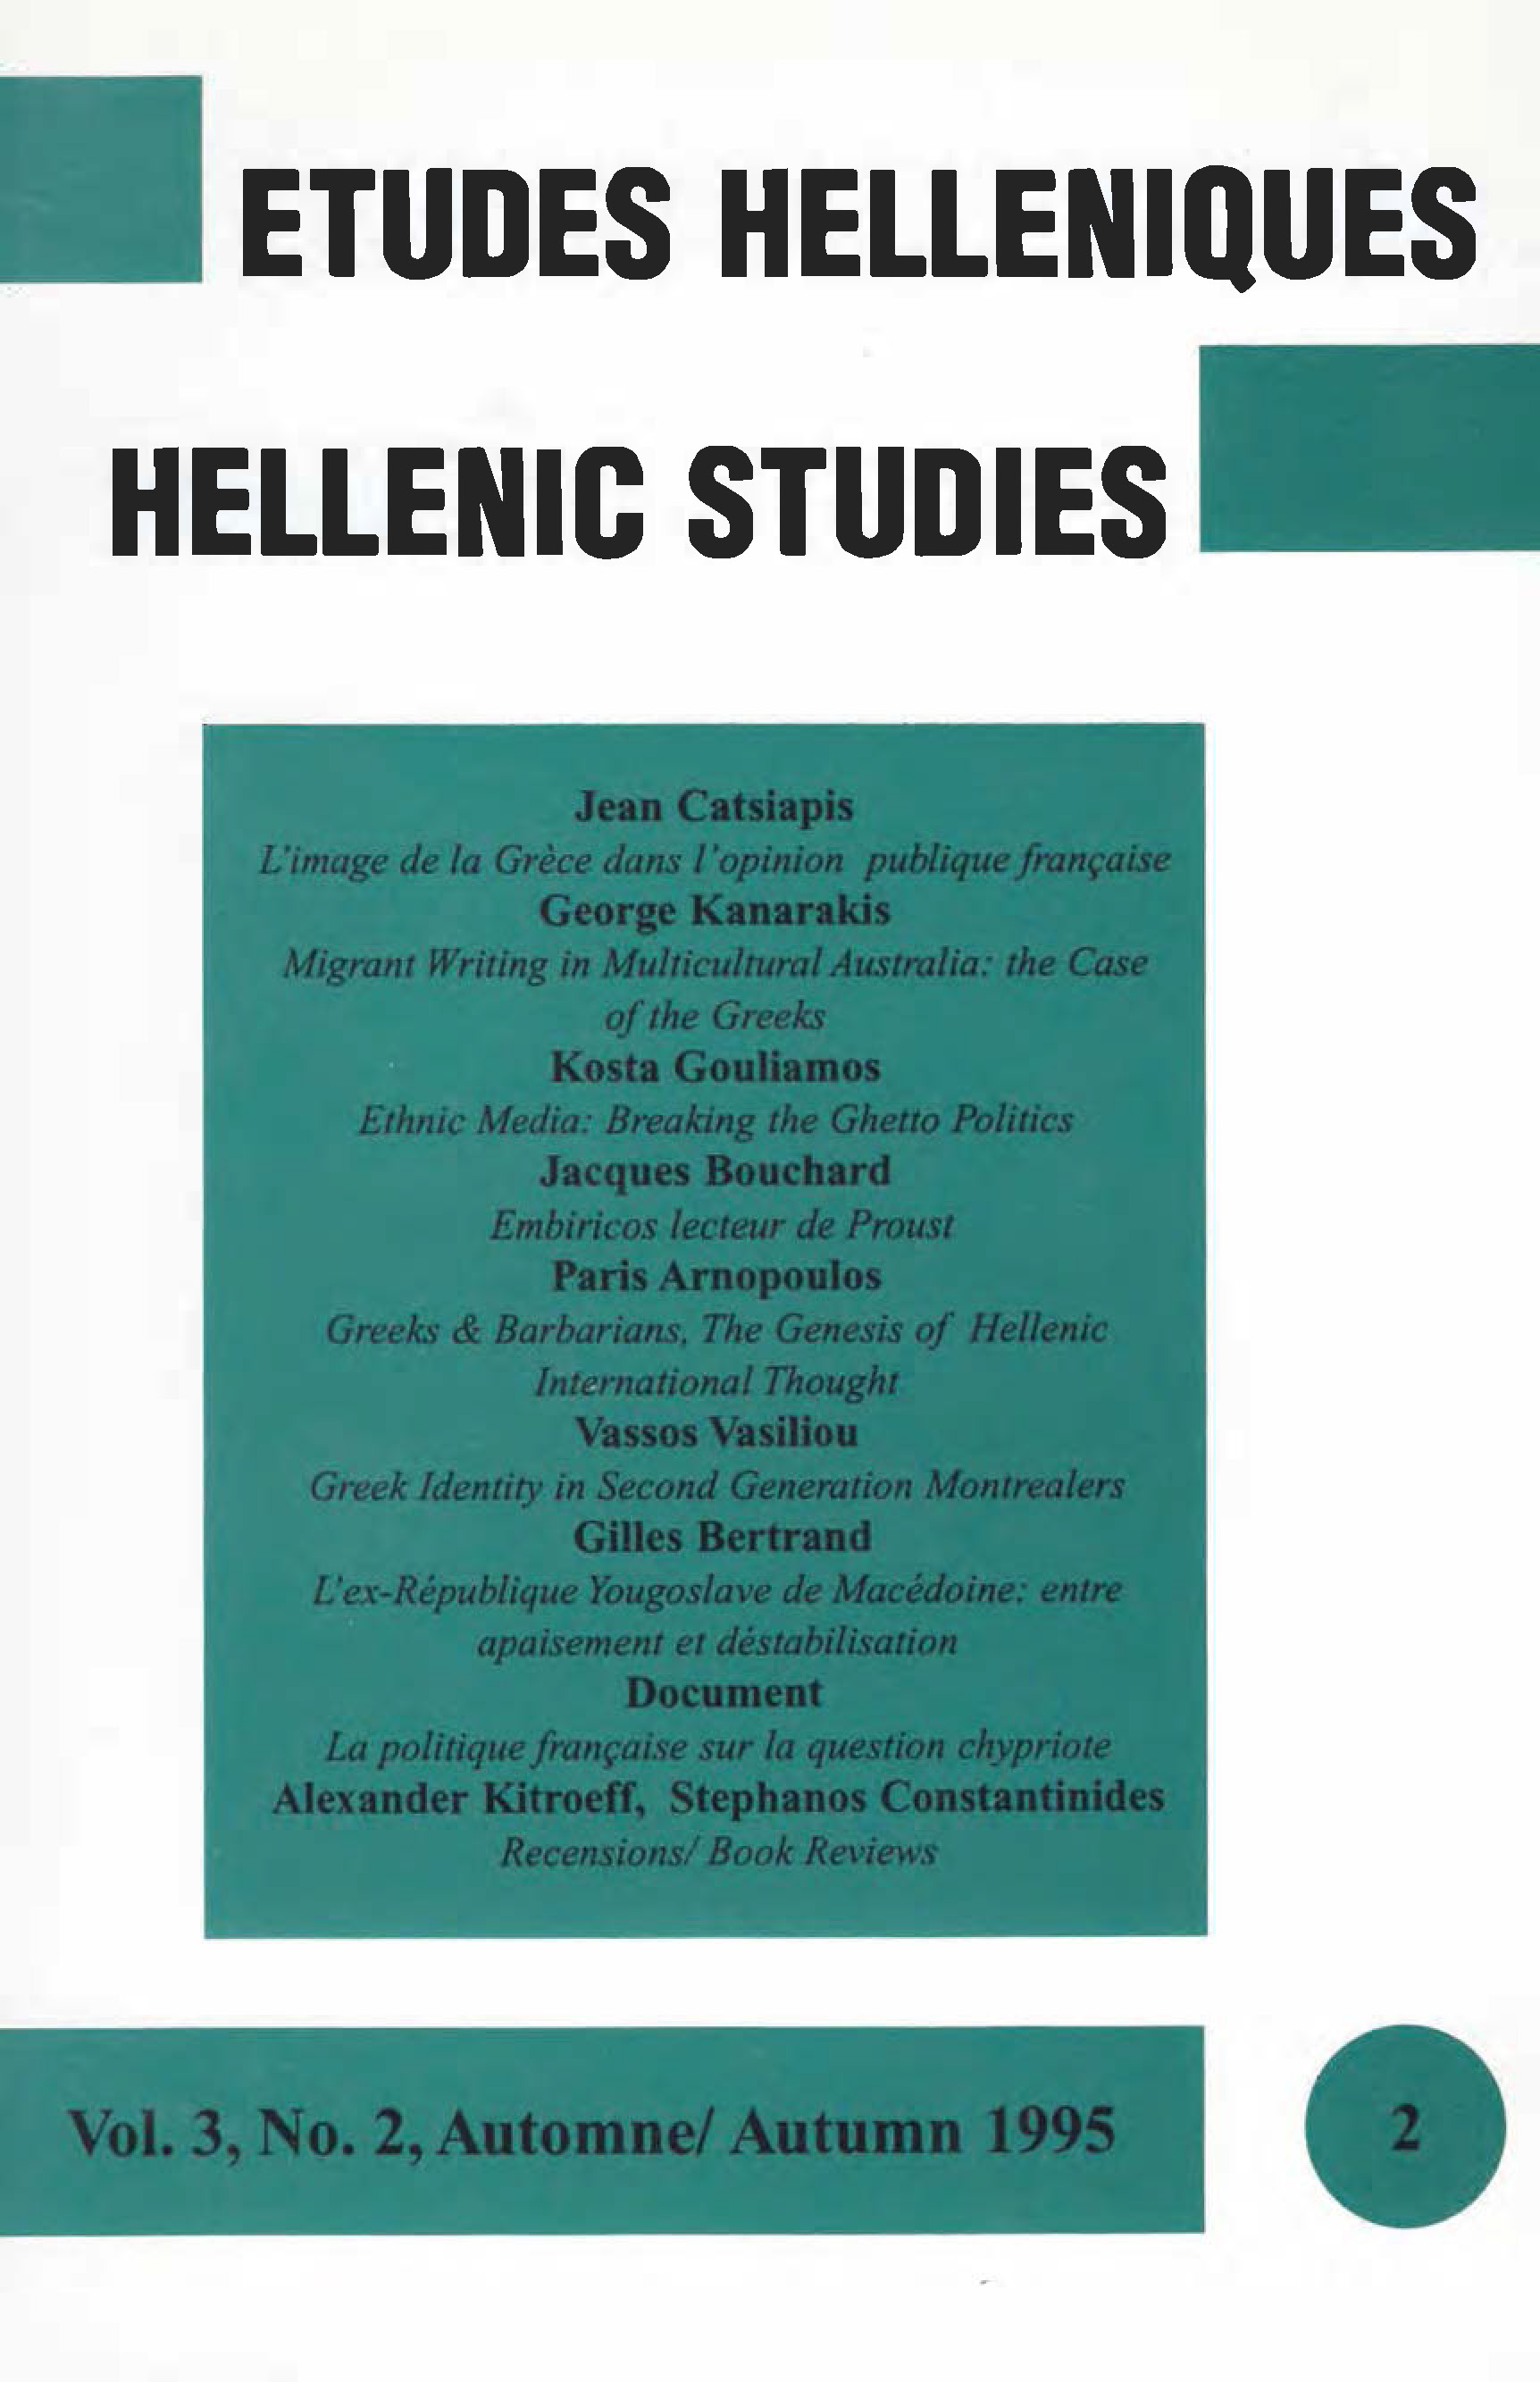 Études helléniques / Hellenic Studies, Volume 3, No 2, 1995, cover